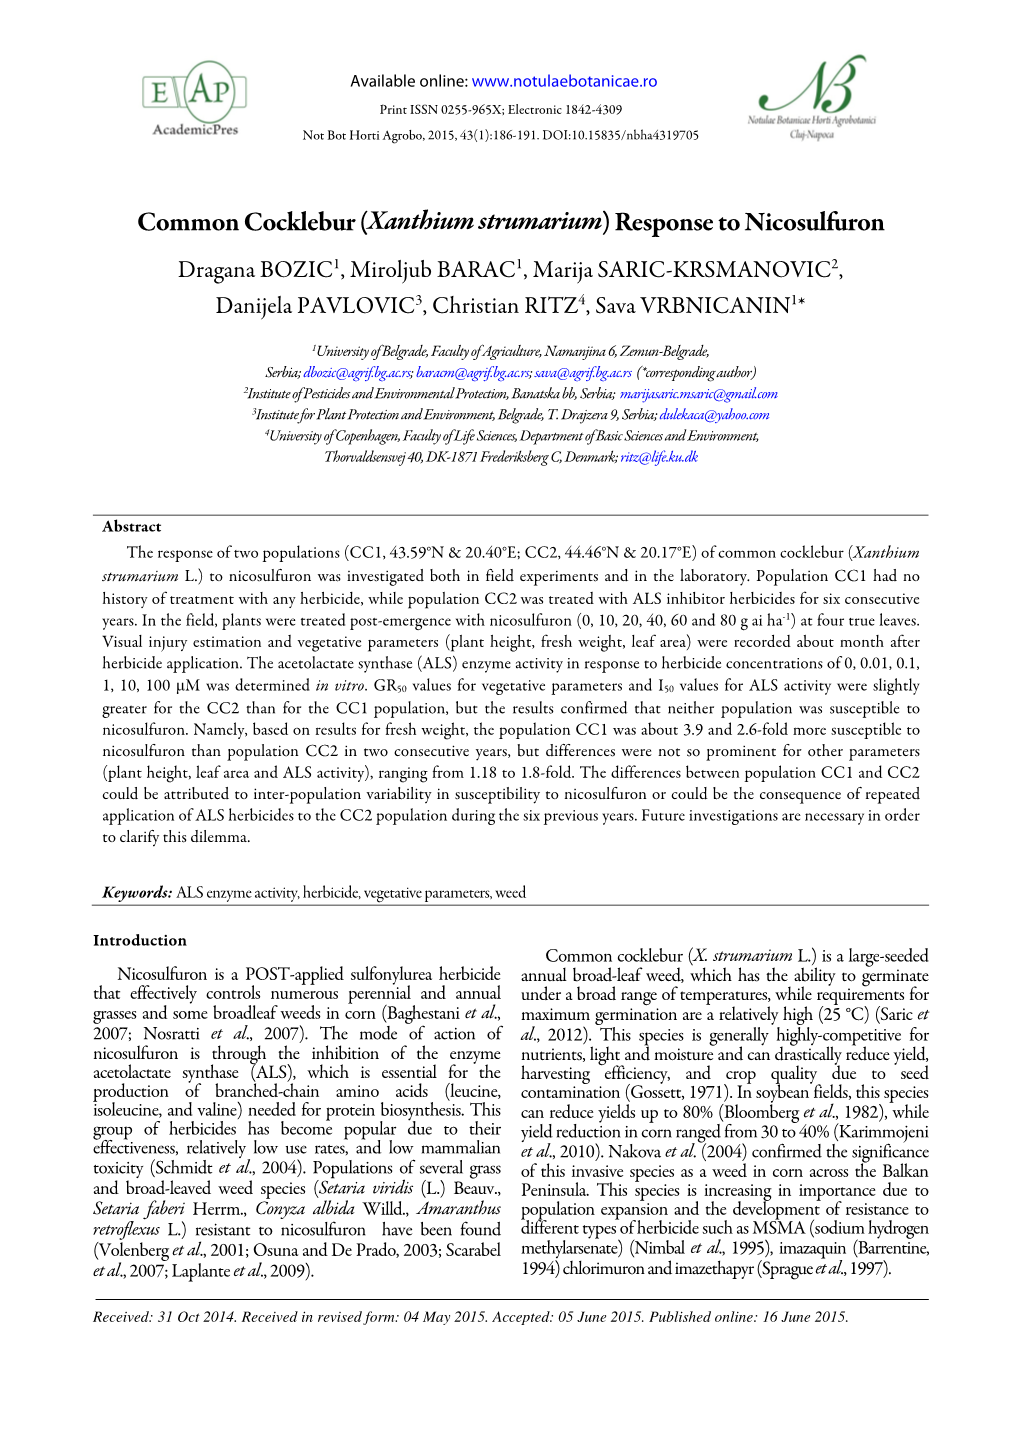 Common Cocklebur (Xanthium Strumarium) Response To